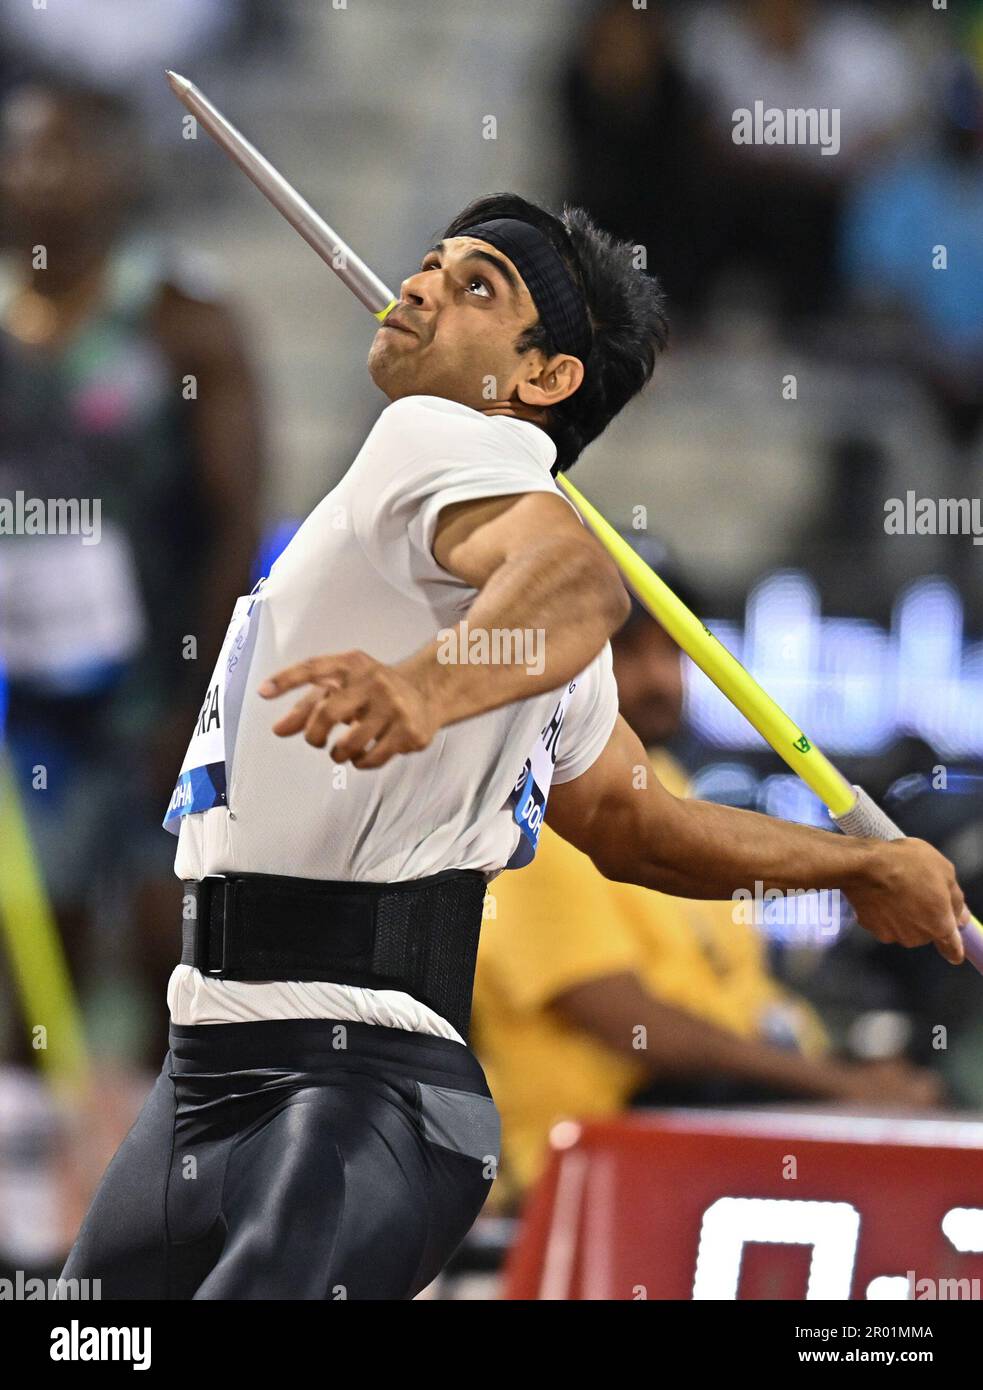 Doha, Qatar. 5th maggio, 2023. Neeraj Chopra dell'India compete durante il lancio maschile di Javelin al meeting di atletica della Diamond League 2023 allo stadio Suhaim bin Hamad di Doha, capitale del Qatar, il 5 maggio 2023. Credit: Nikku/Xinhua/Alamy Live News Foto Stock